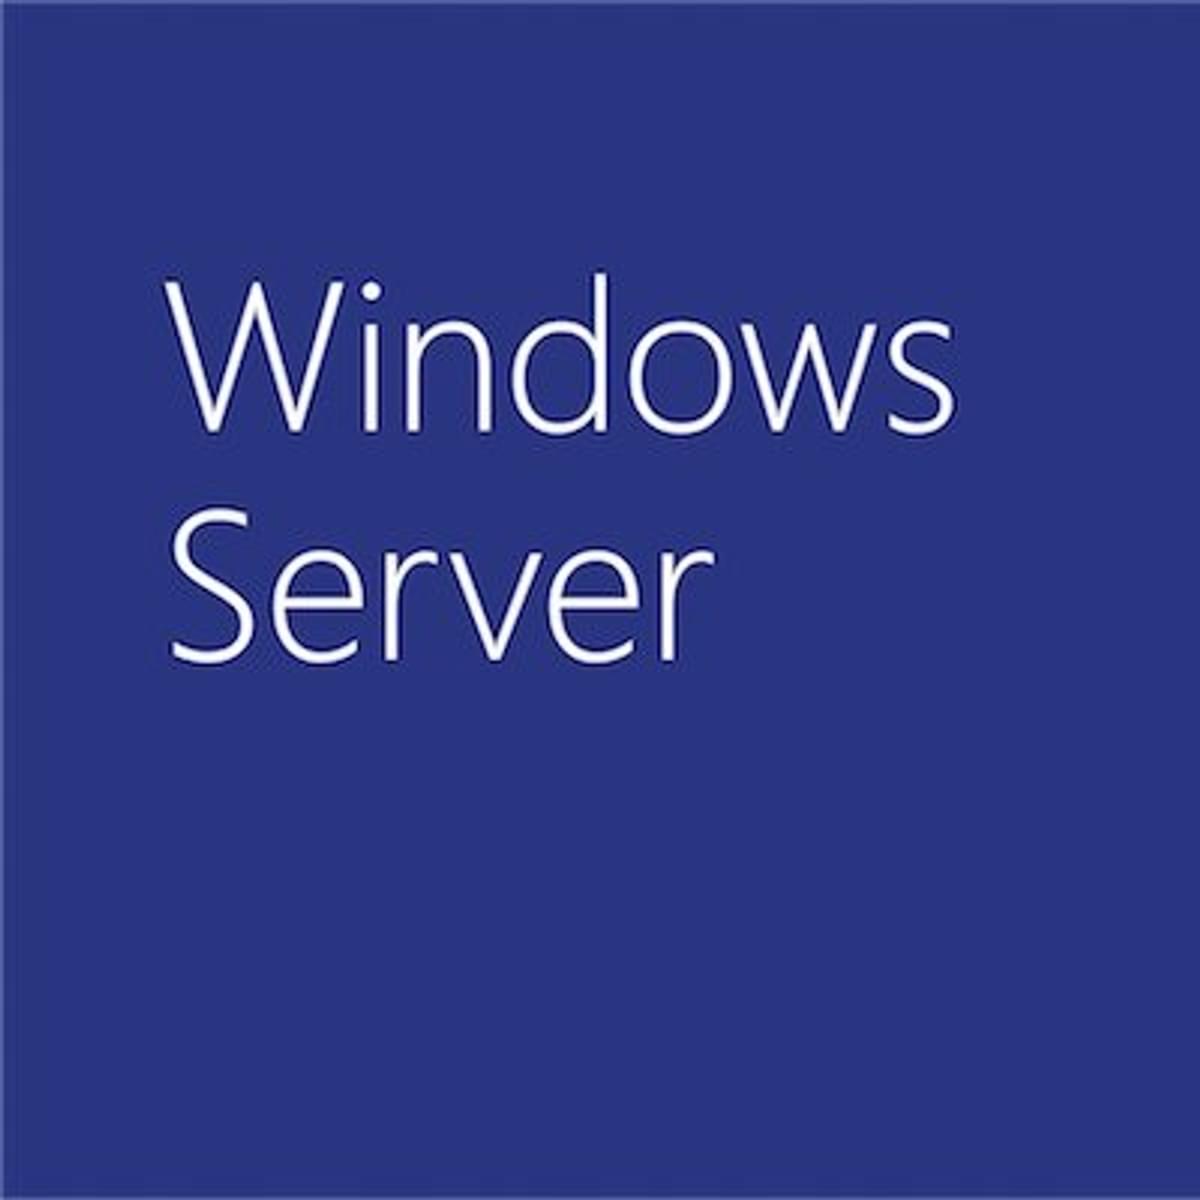 Microsoft Windows Server 2019 preview is beschikbaar image